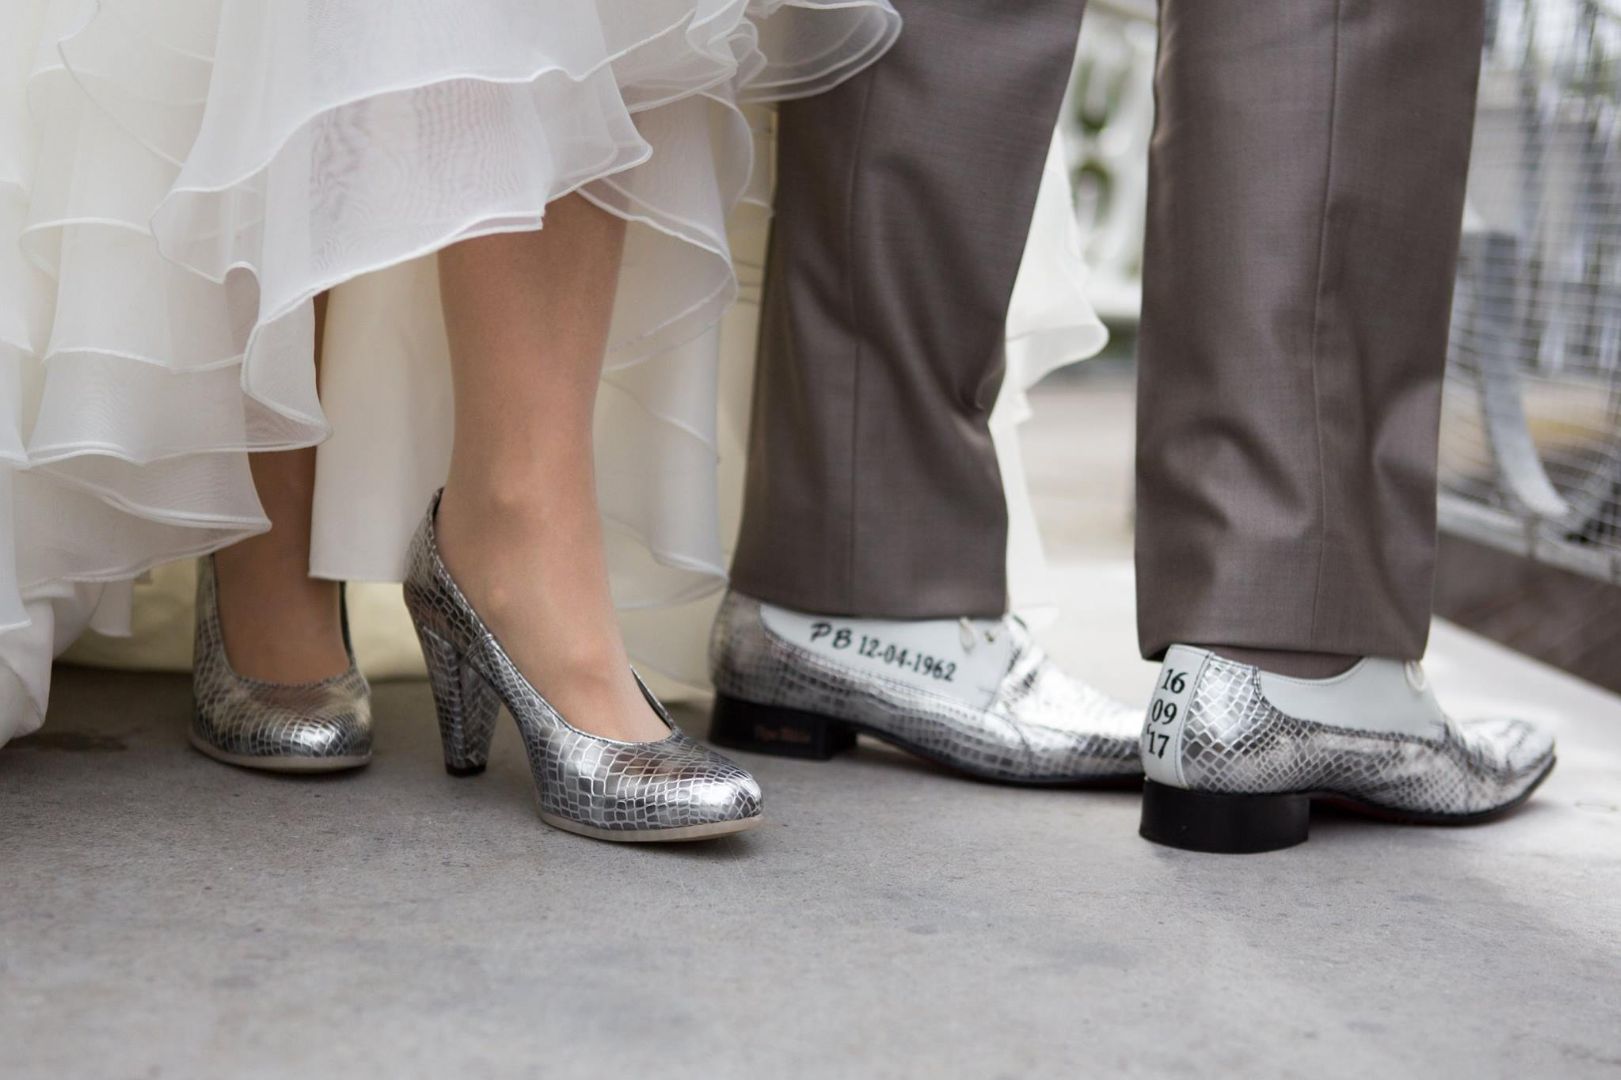 Shoelia matchende heren en damesschoenen Pepe Milan met borduren trouwdatum op schoenen 